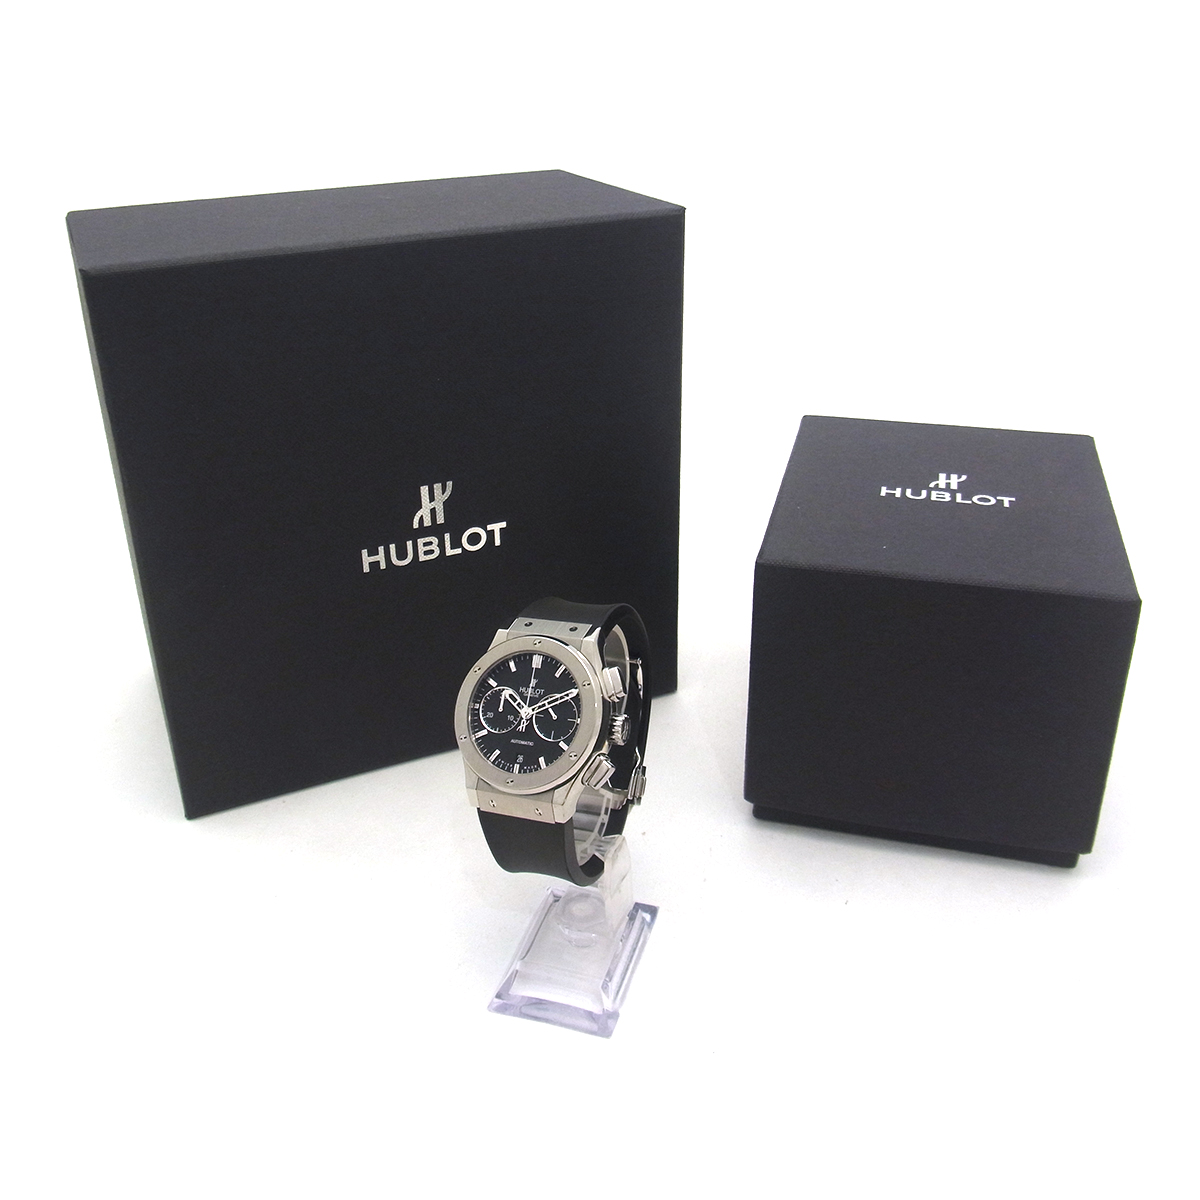 ウブロ(HUBLOT) クラシックフュージョン 521.NX.1170.RX メンズ腕時計 黒文字盤 ブラック